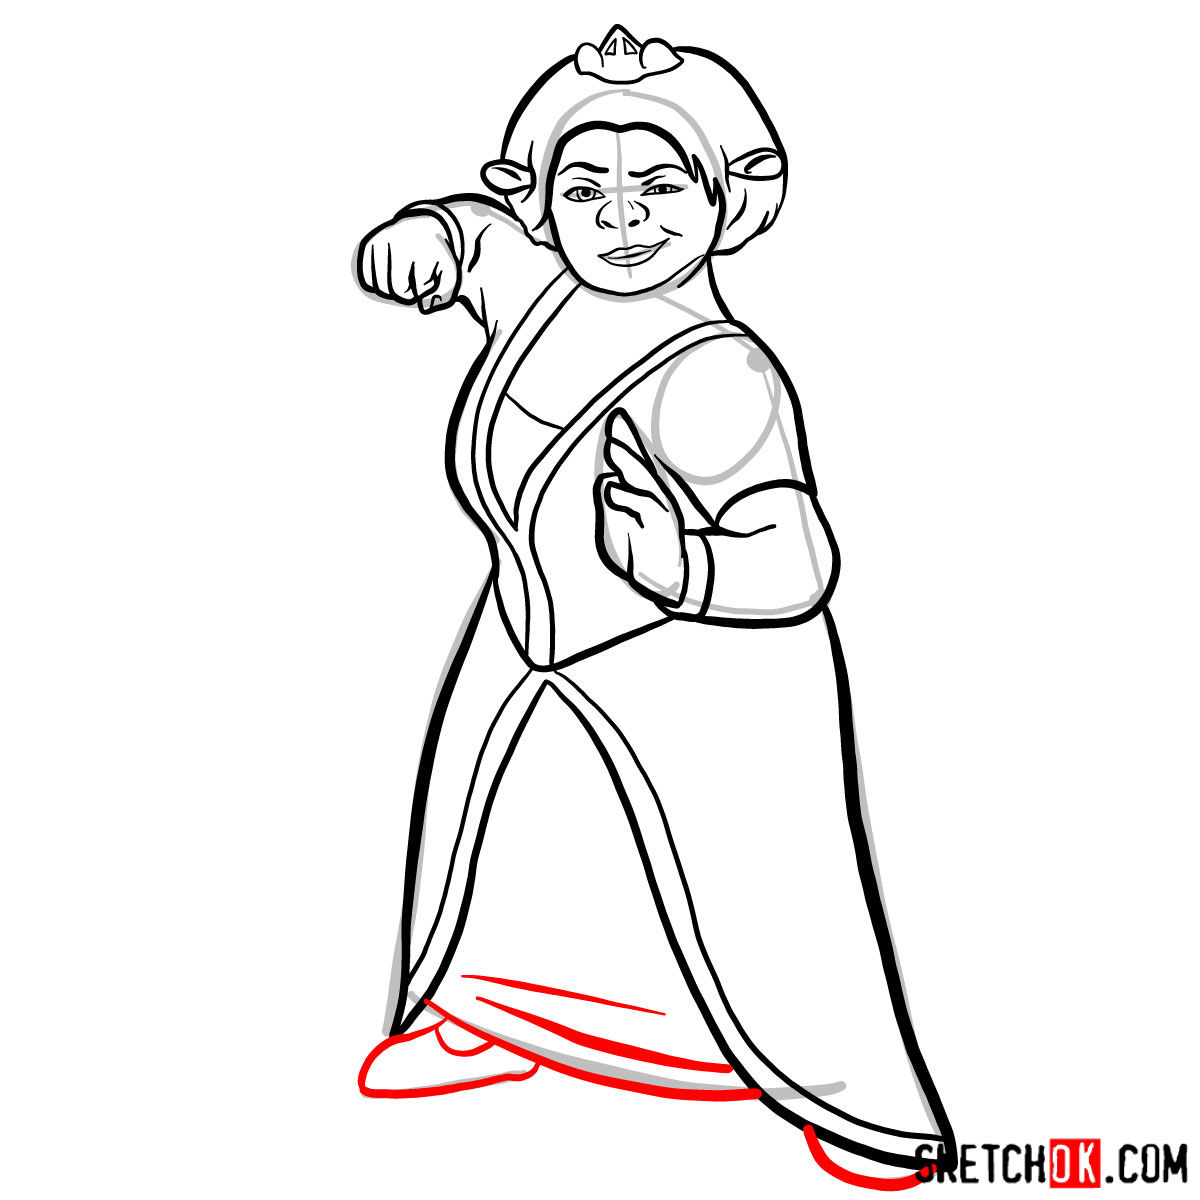 How to draw Princess Fiona - step 11